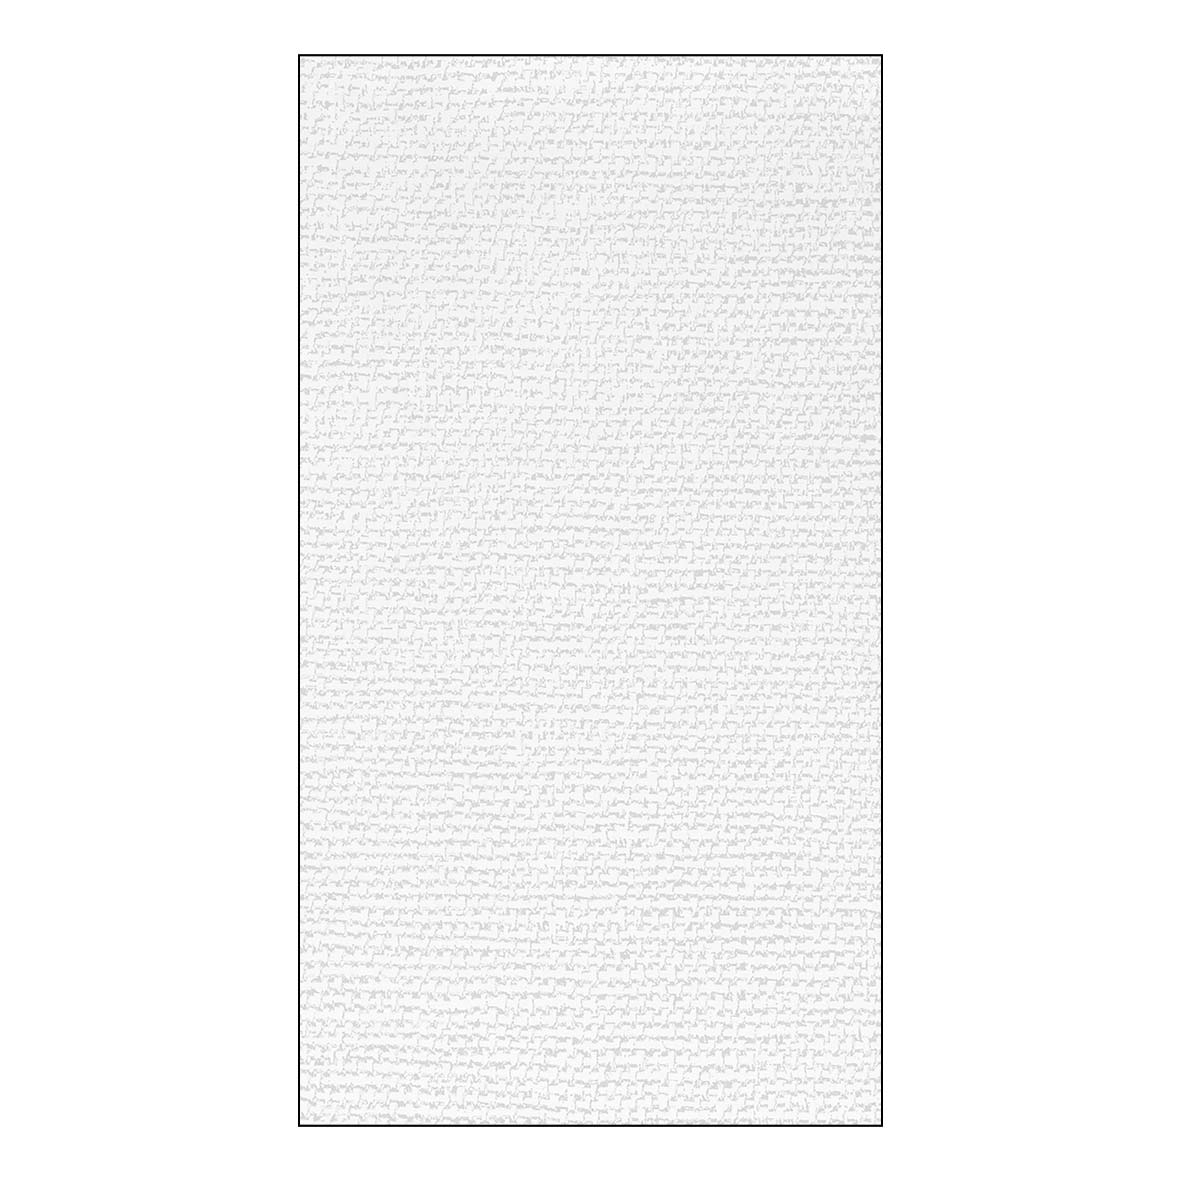 Asciugamano per gli ospiti - Canvas Cotton GuestTowels 33x40